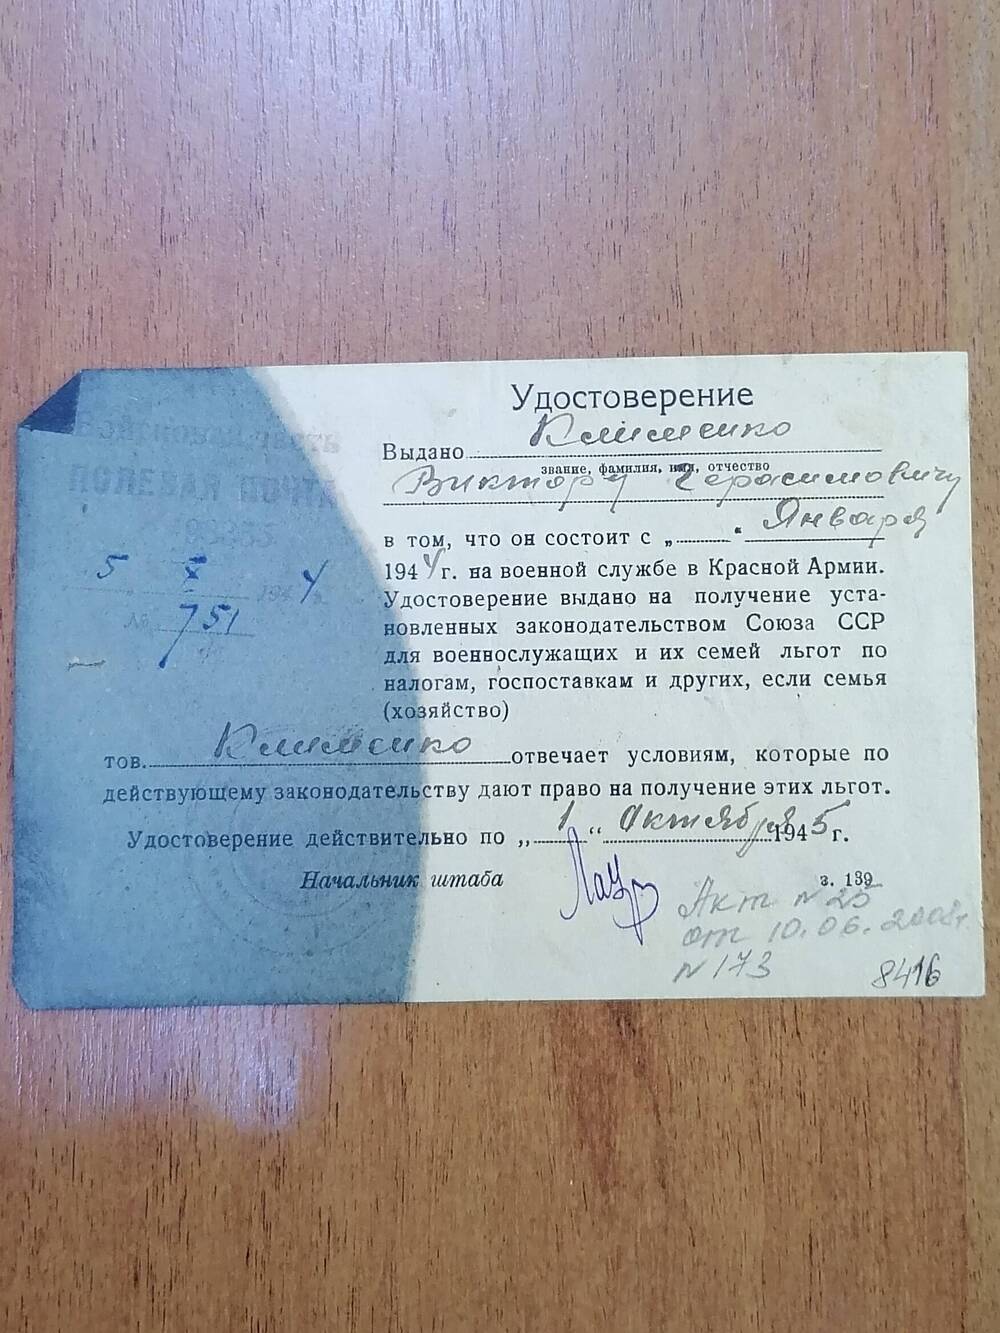 Удостоверение № 751 выдано Клименко Виктору Герасимовичу в том, что он состоит на военной службе в Красной Армии